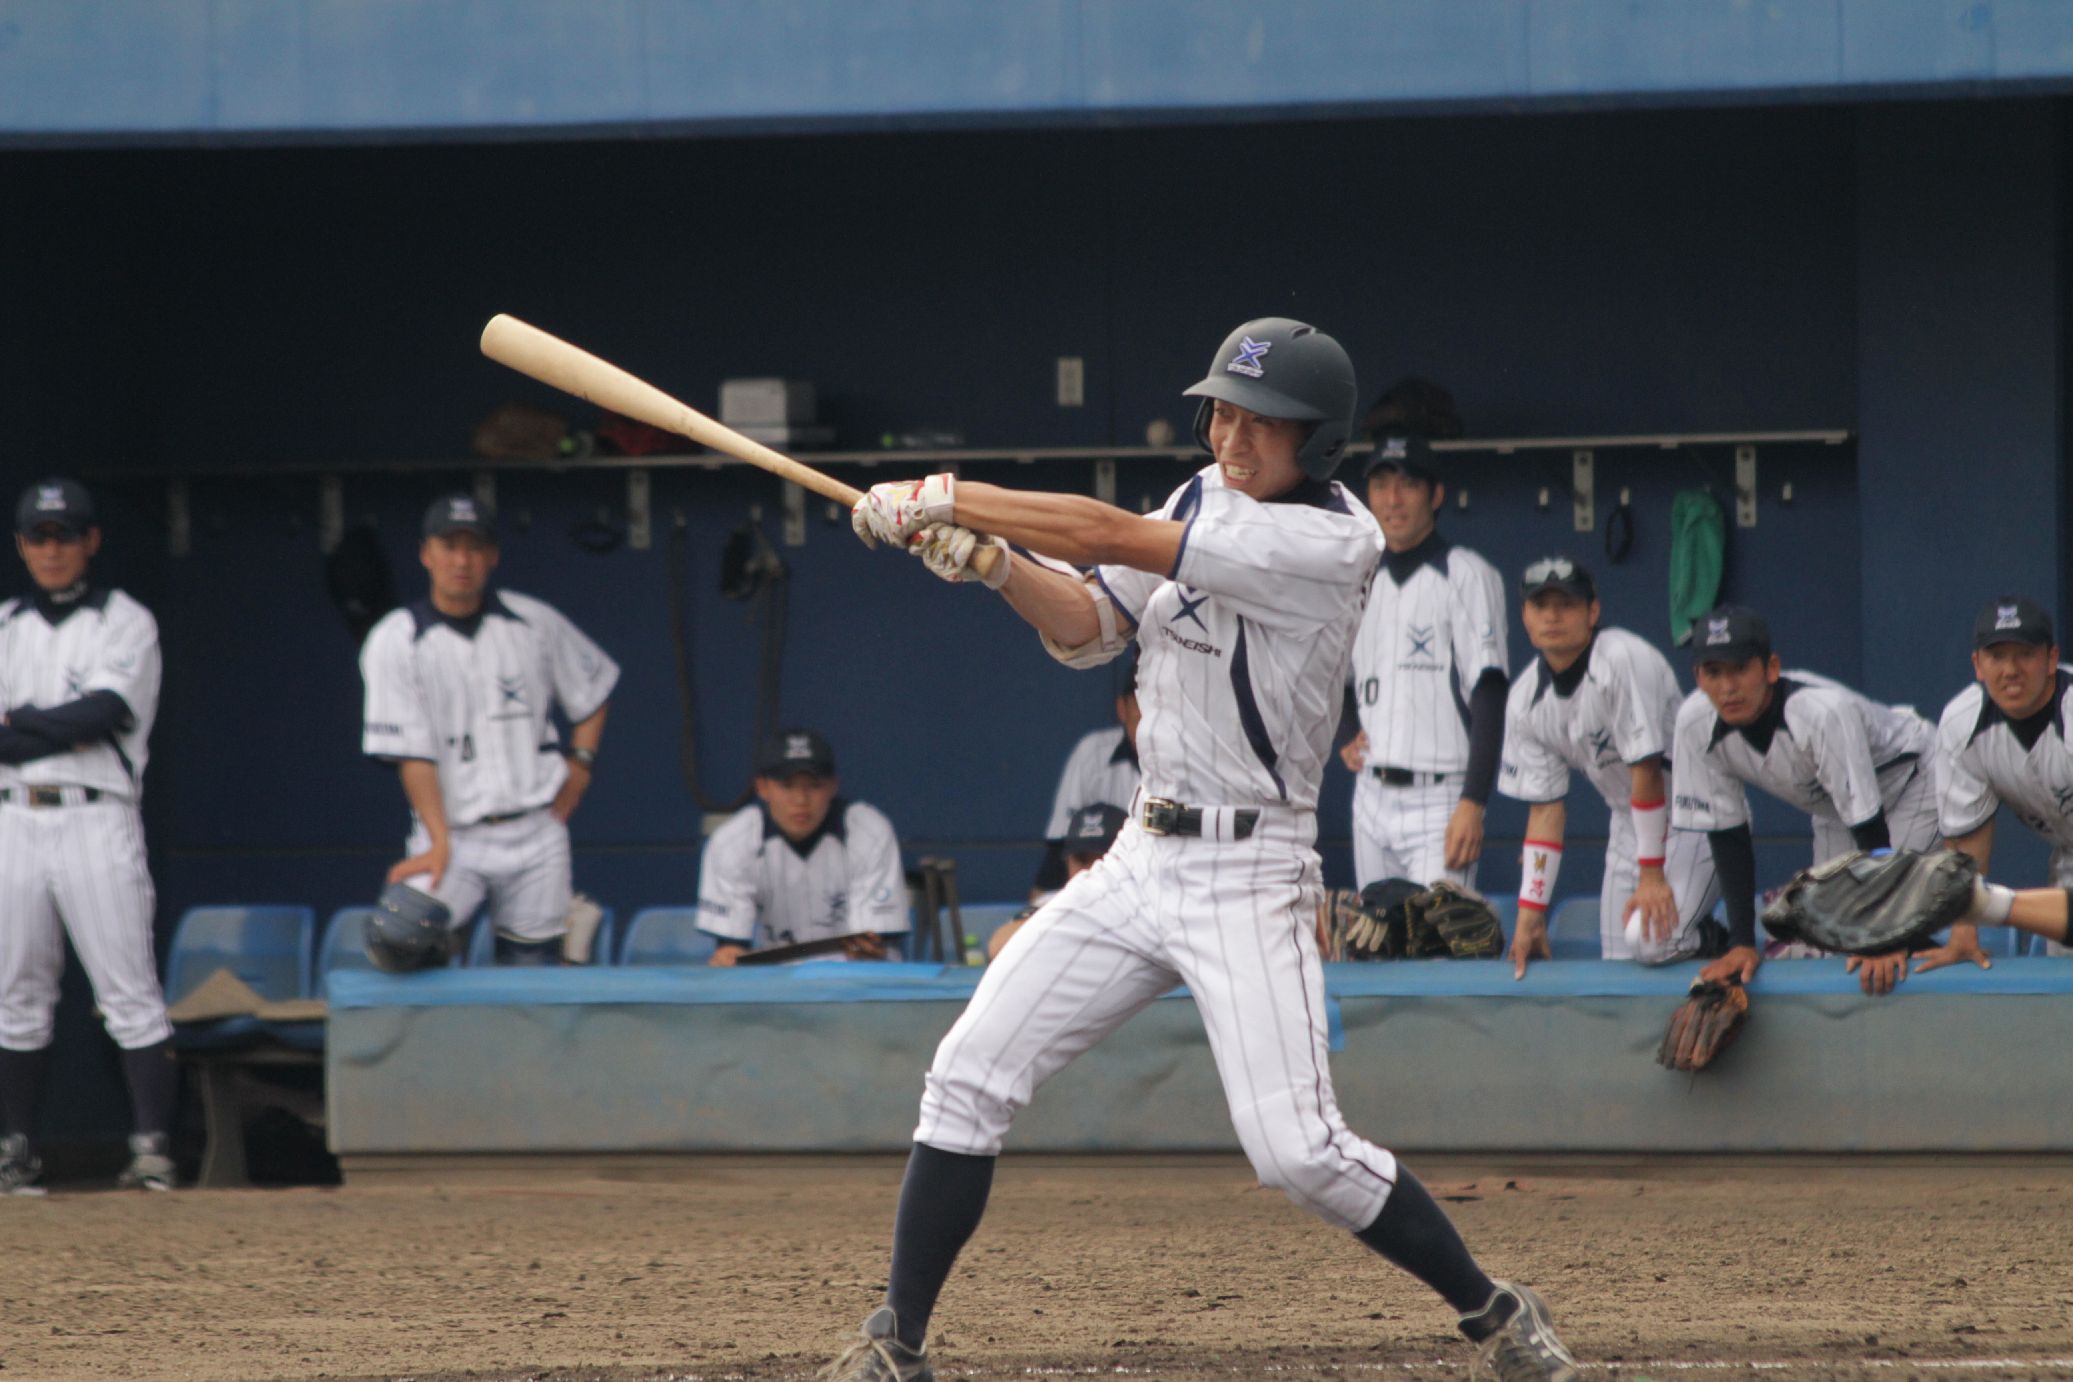 ツネイシ硬式野球部、第86回都市対抗野球大会広島県予選を突破、中国予選進出